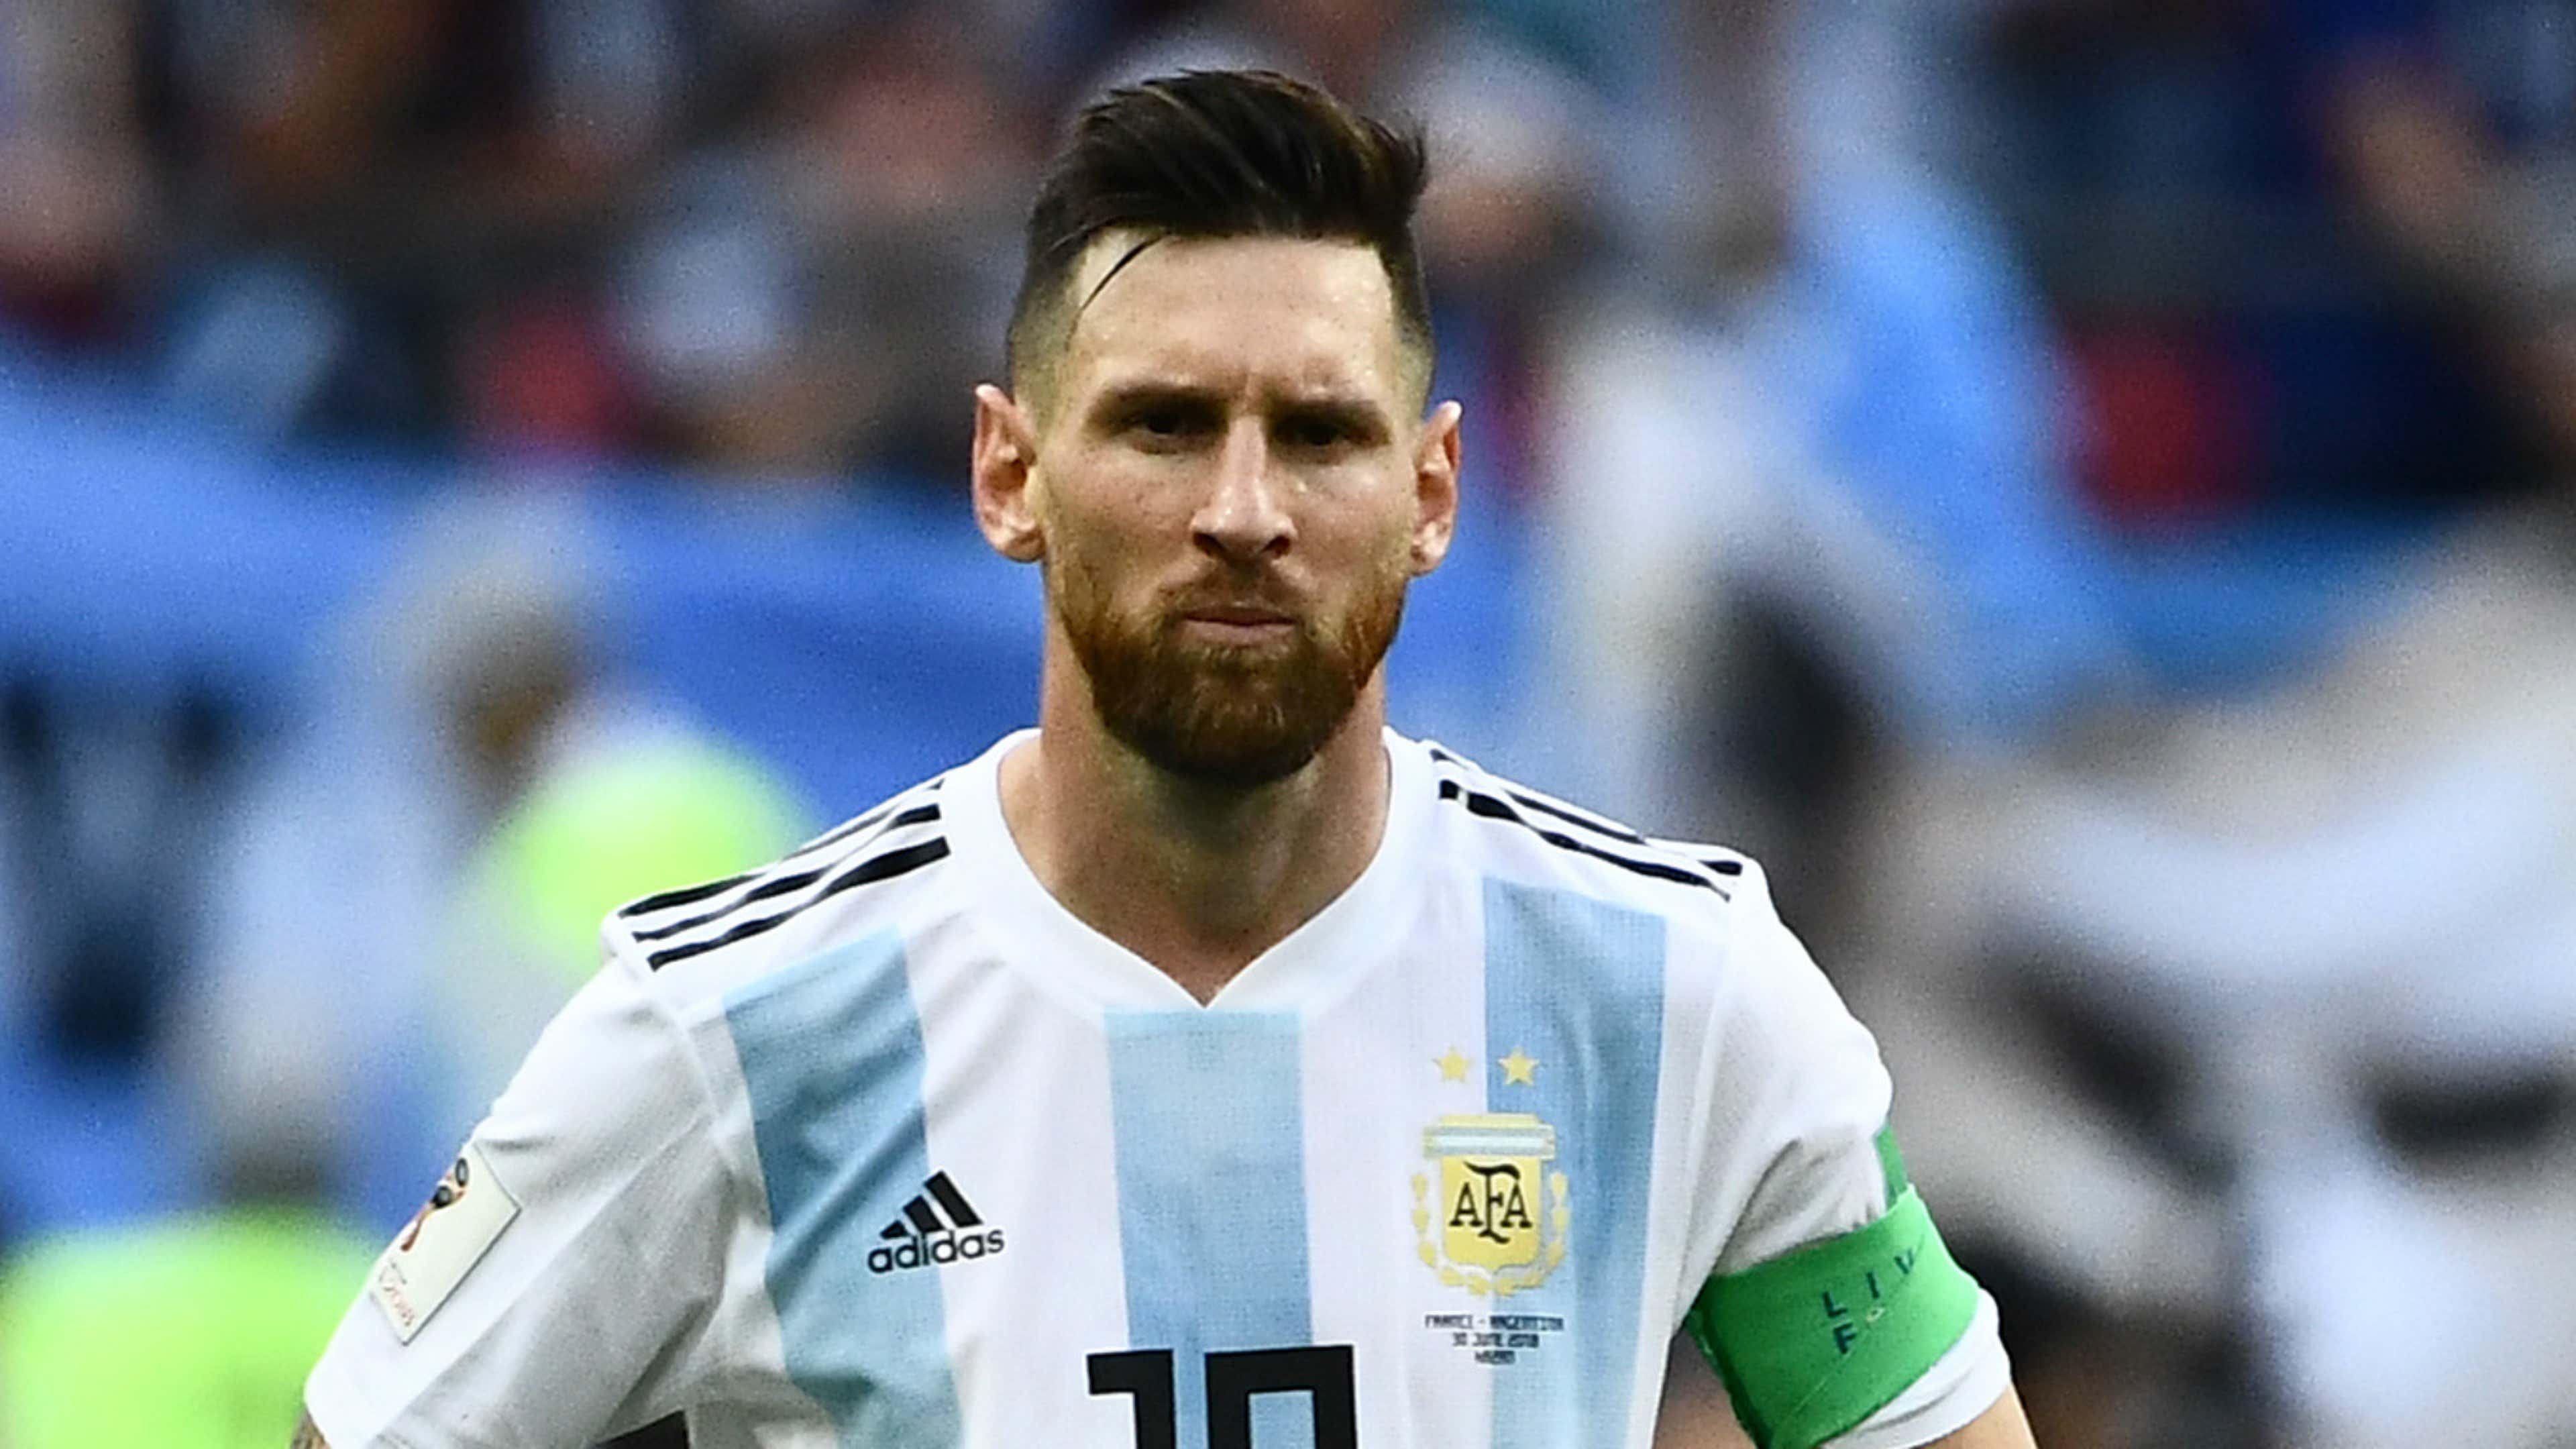 Messi não joga mais pela Argentina em 2018, diz canal - Superesportes